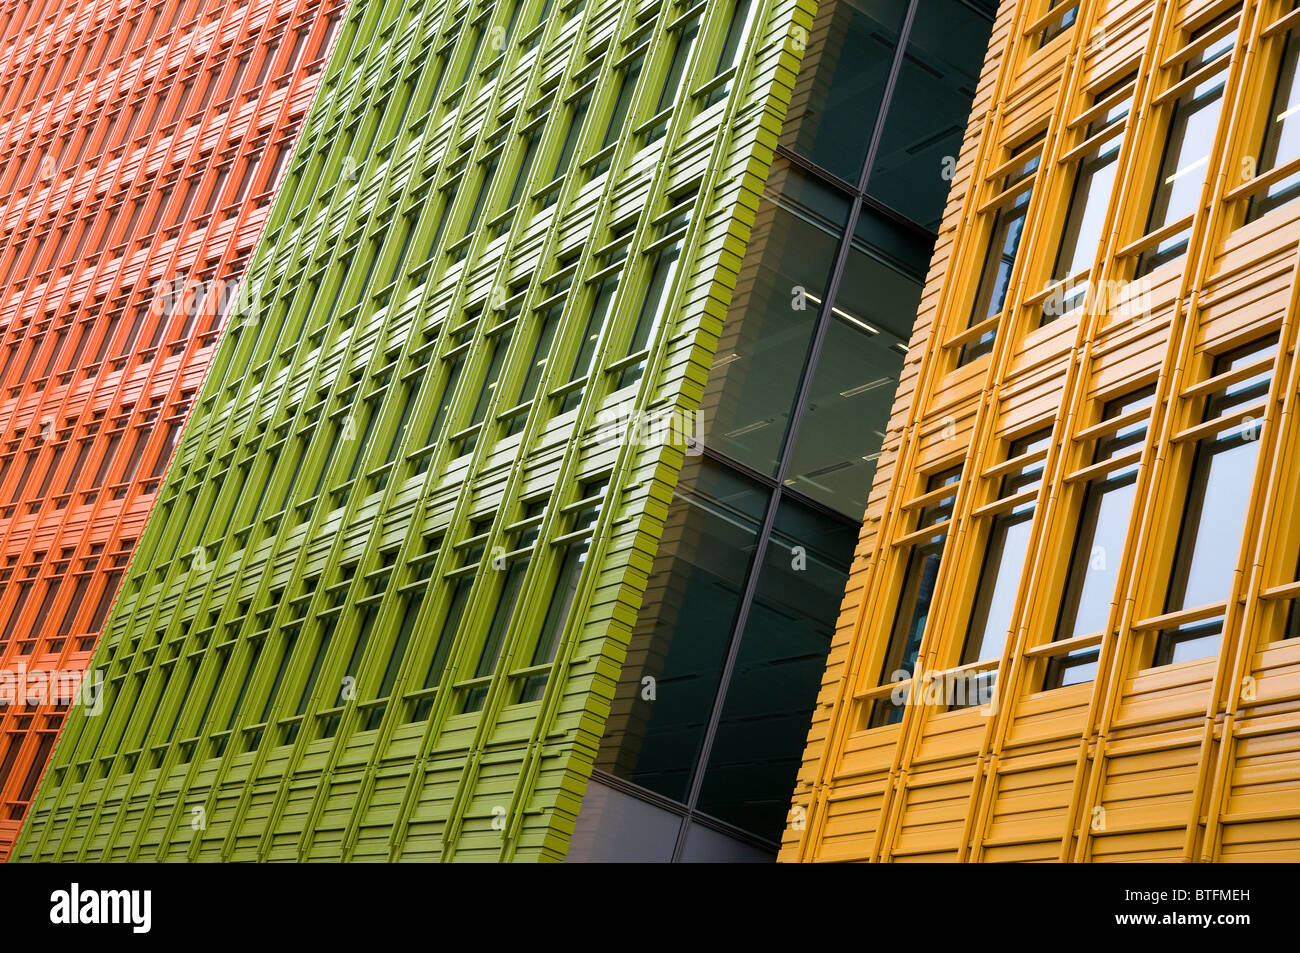 L'architecture contemporaine moderne coloré, Londres, Angleterre Banque D'Images